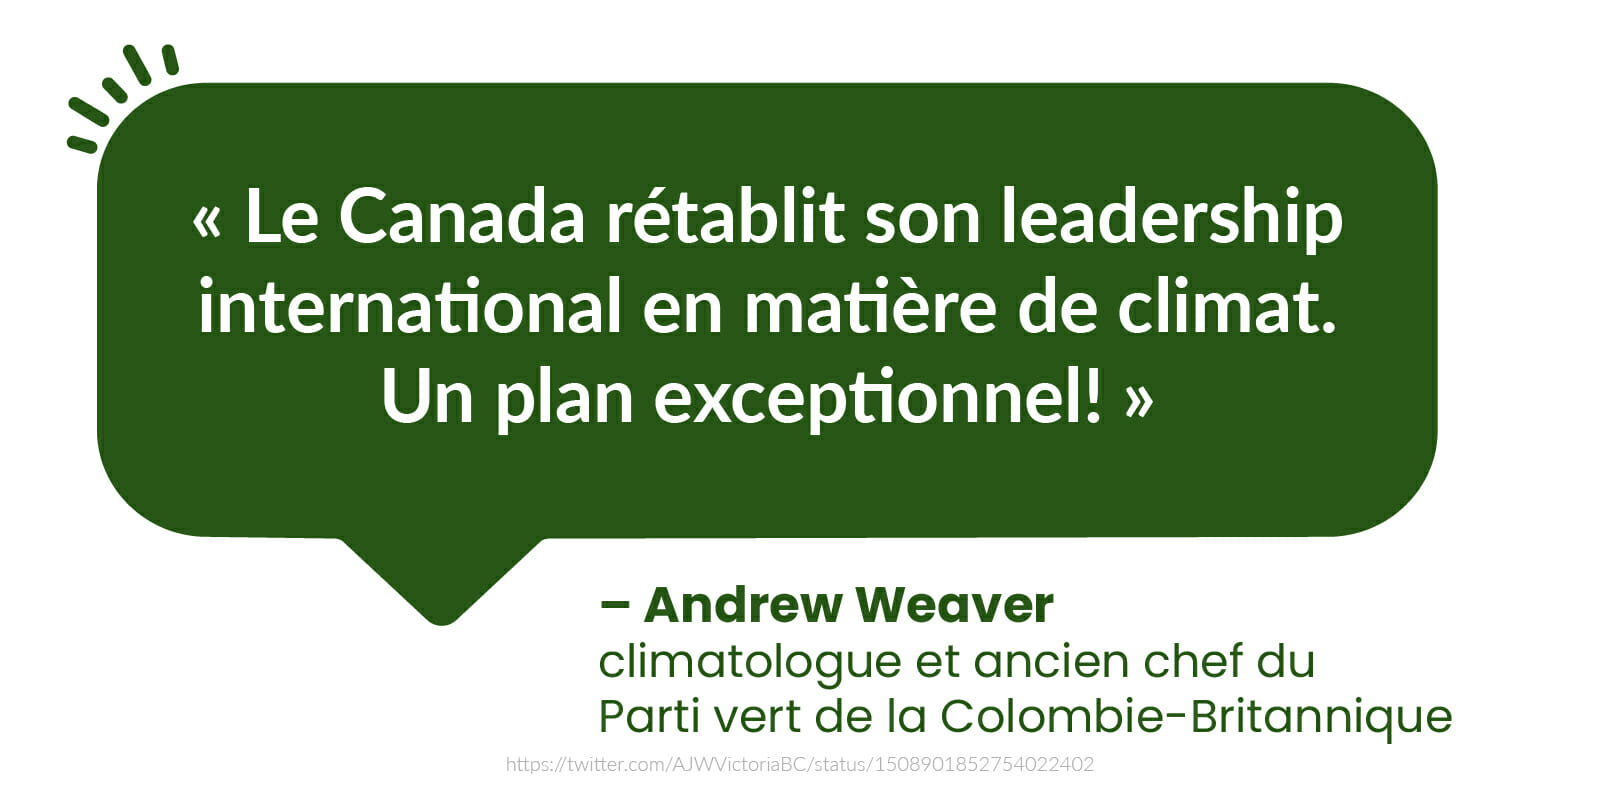  « Le Canada rétablit son leadership international en matière de climat. Un plan exceptionnel! » - Andrew Weaver, climatologue et ancien chef du Parti vert de la Colombie-Britannique